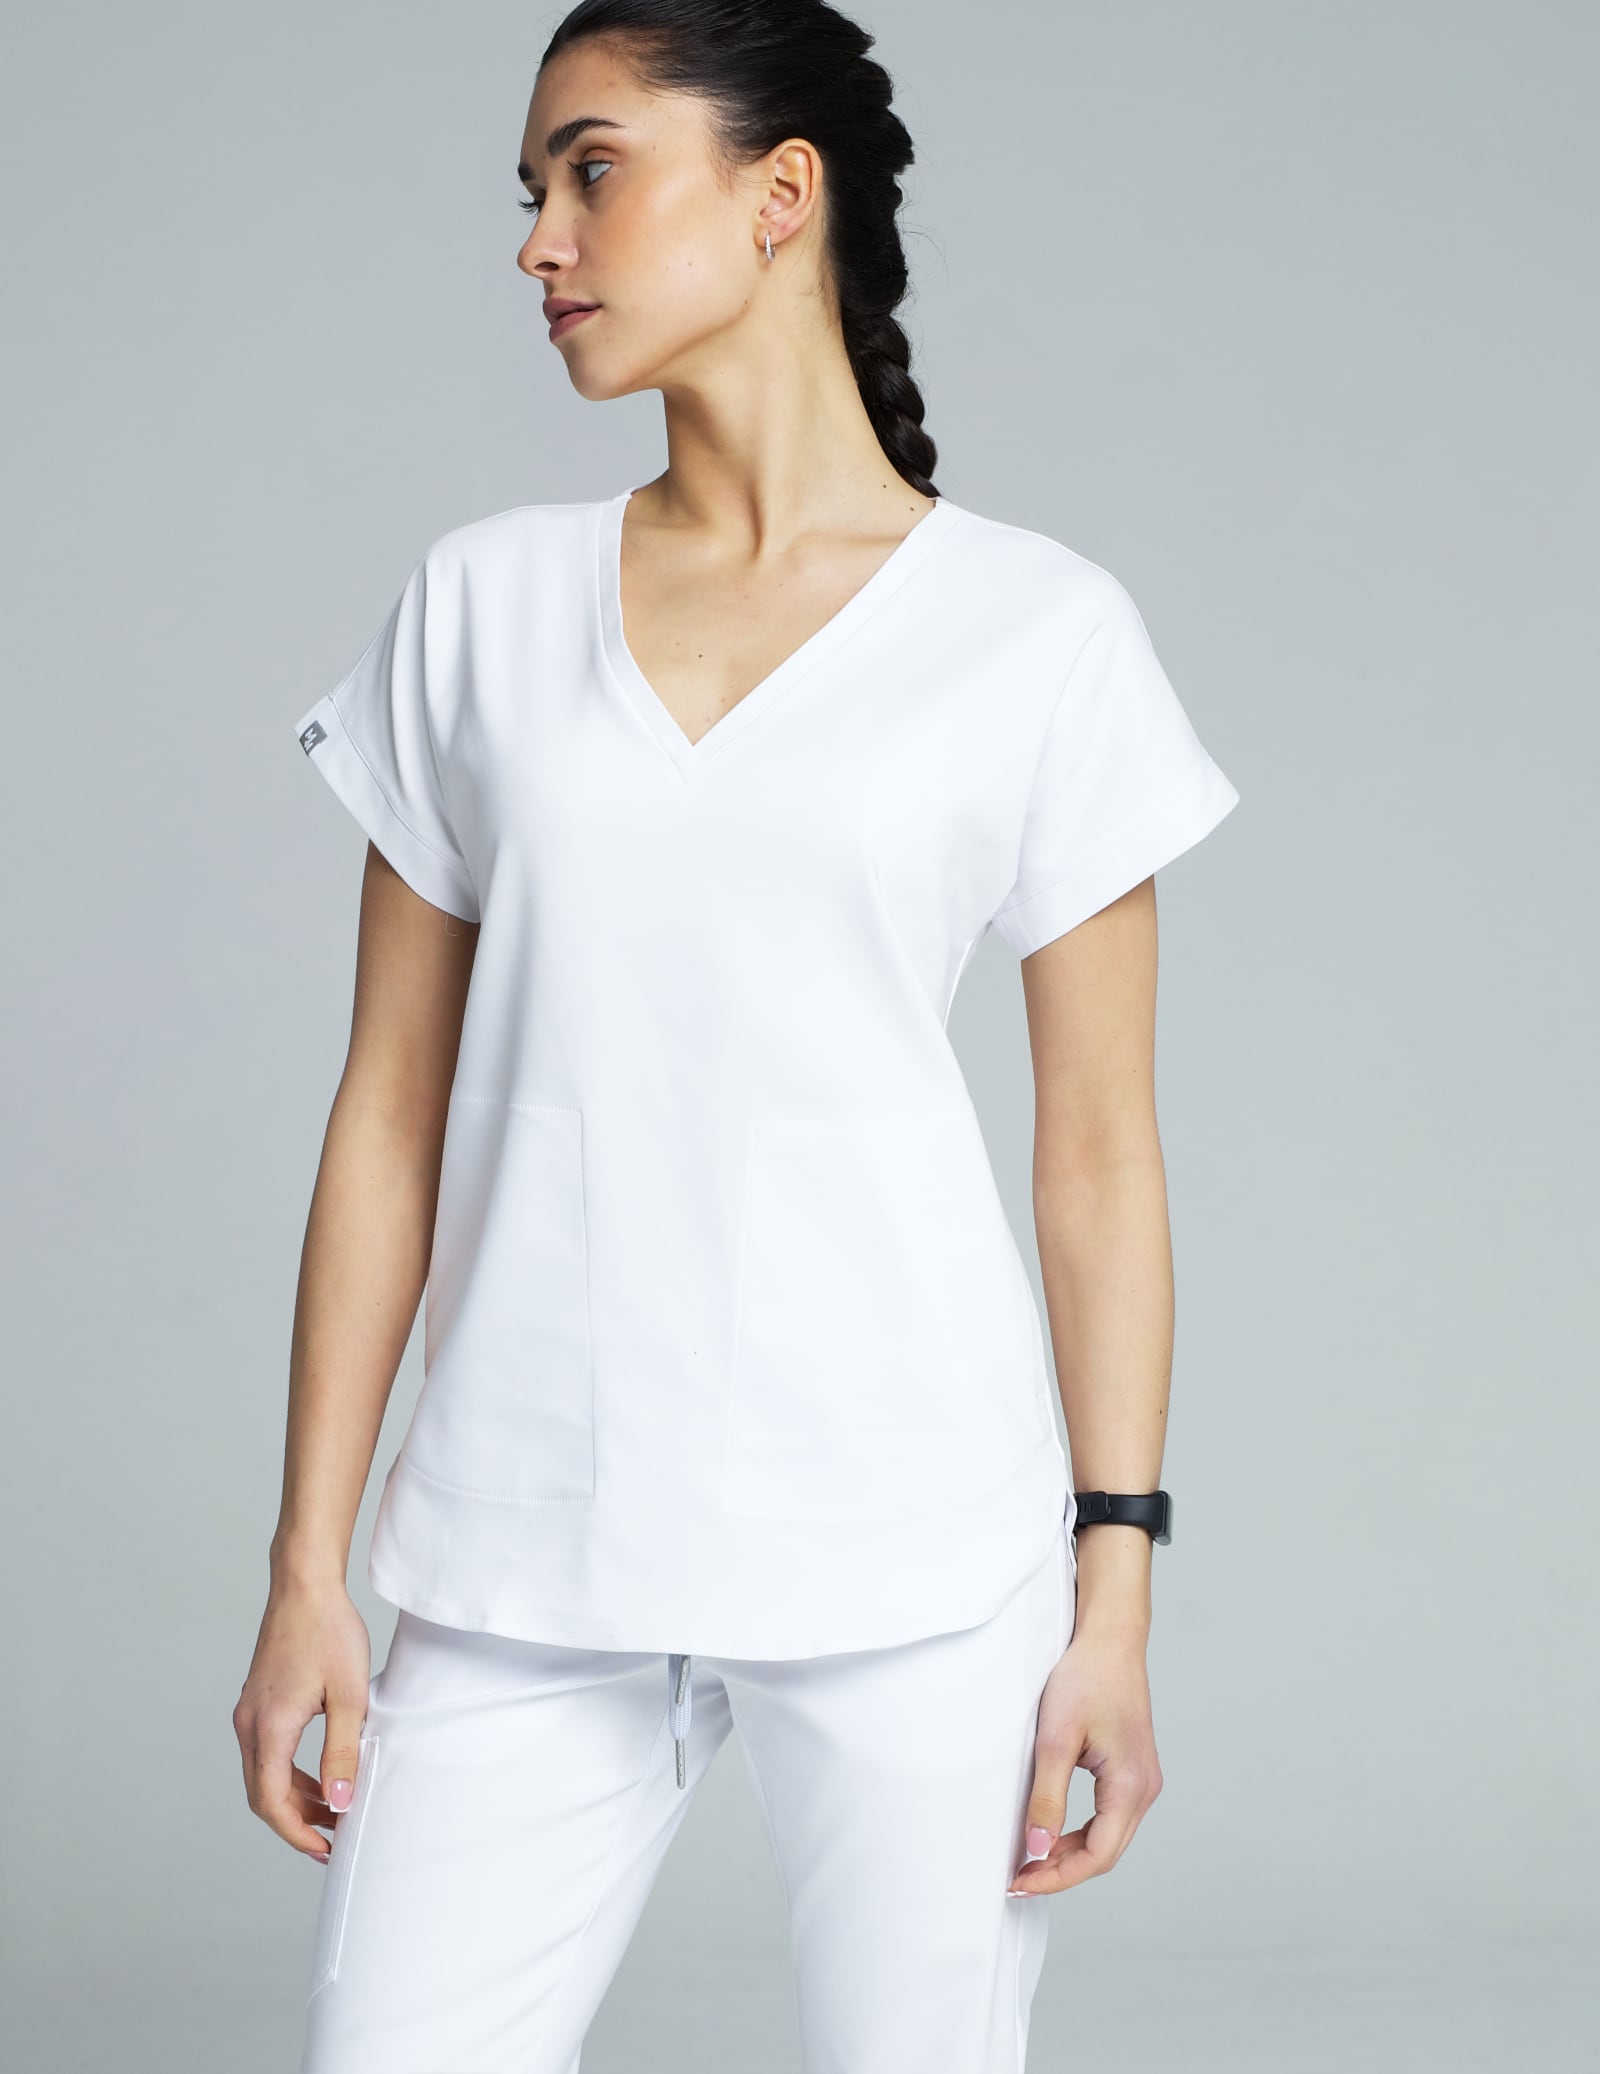 Bluza Medyczna Kendall - White